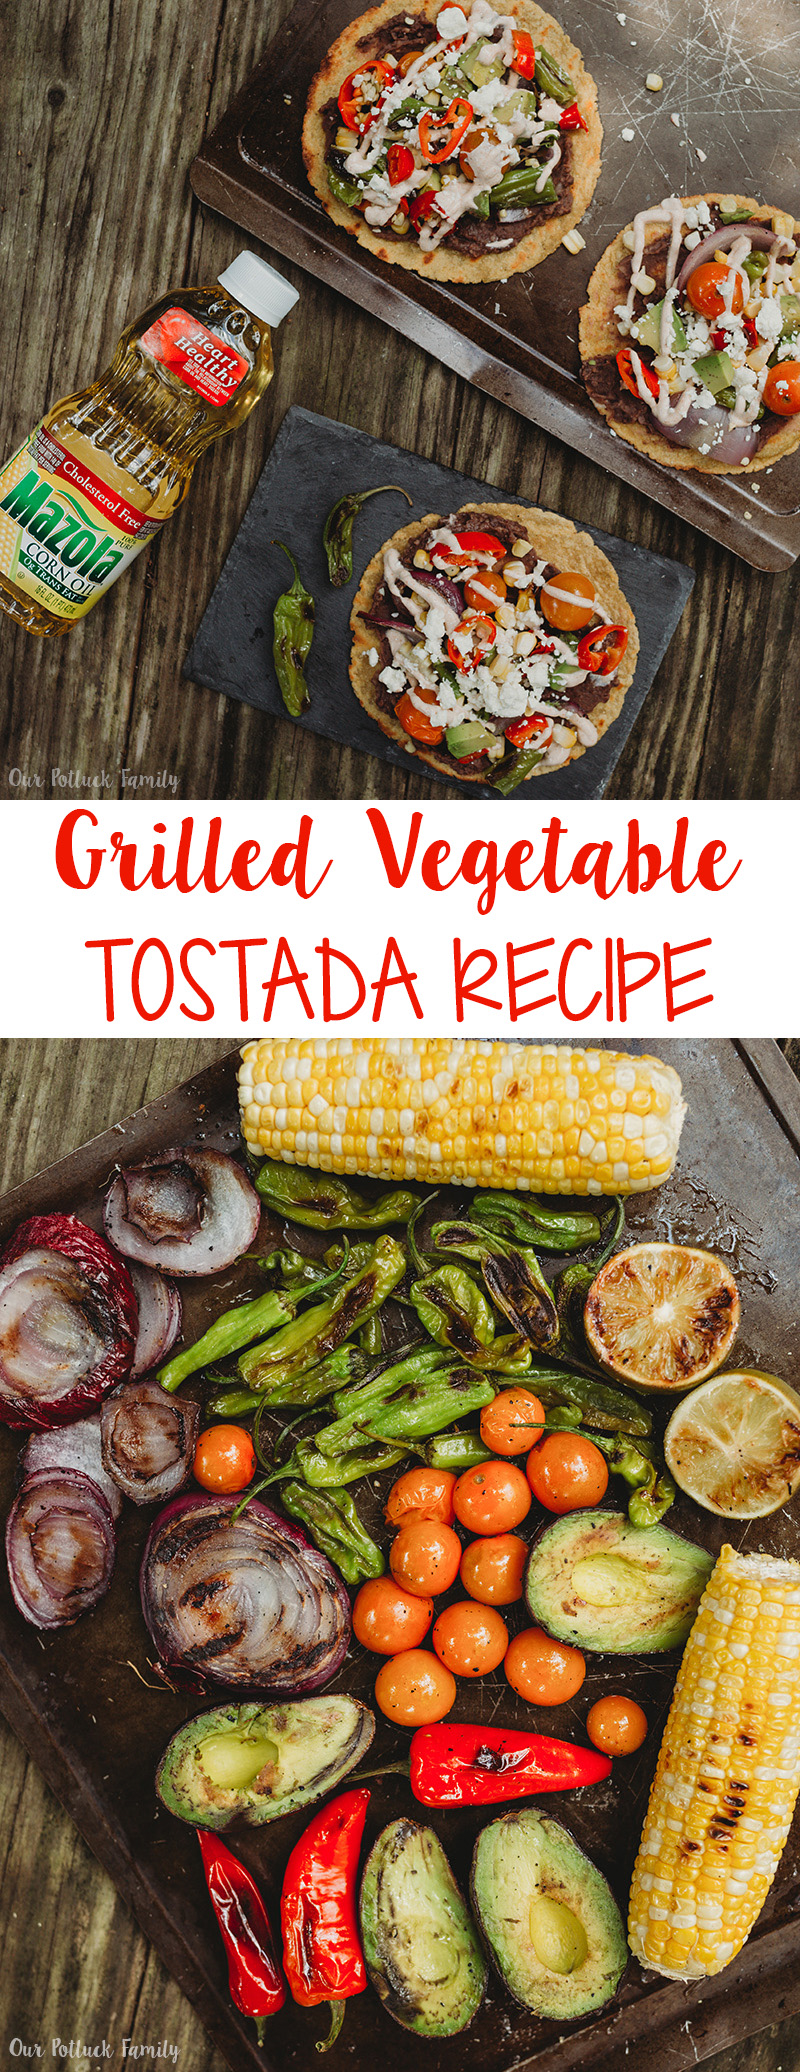 Grilled Vegetable Tostada